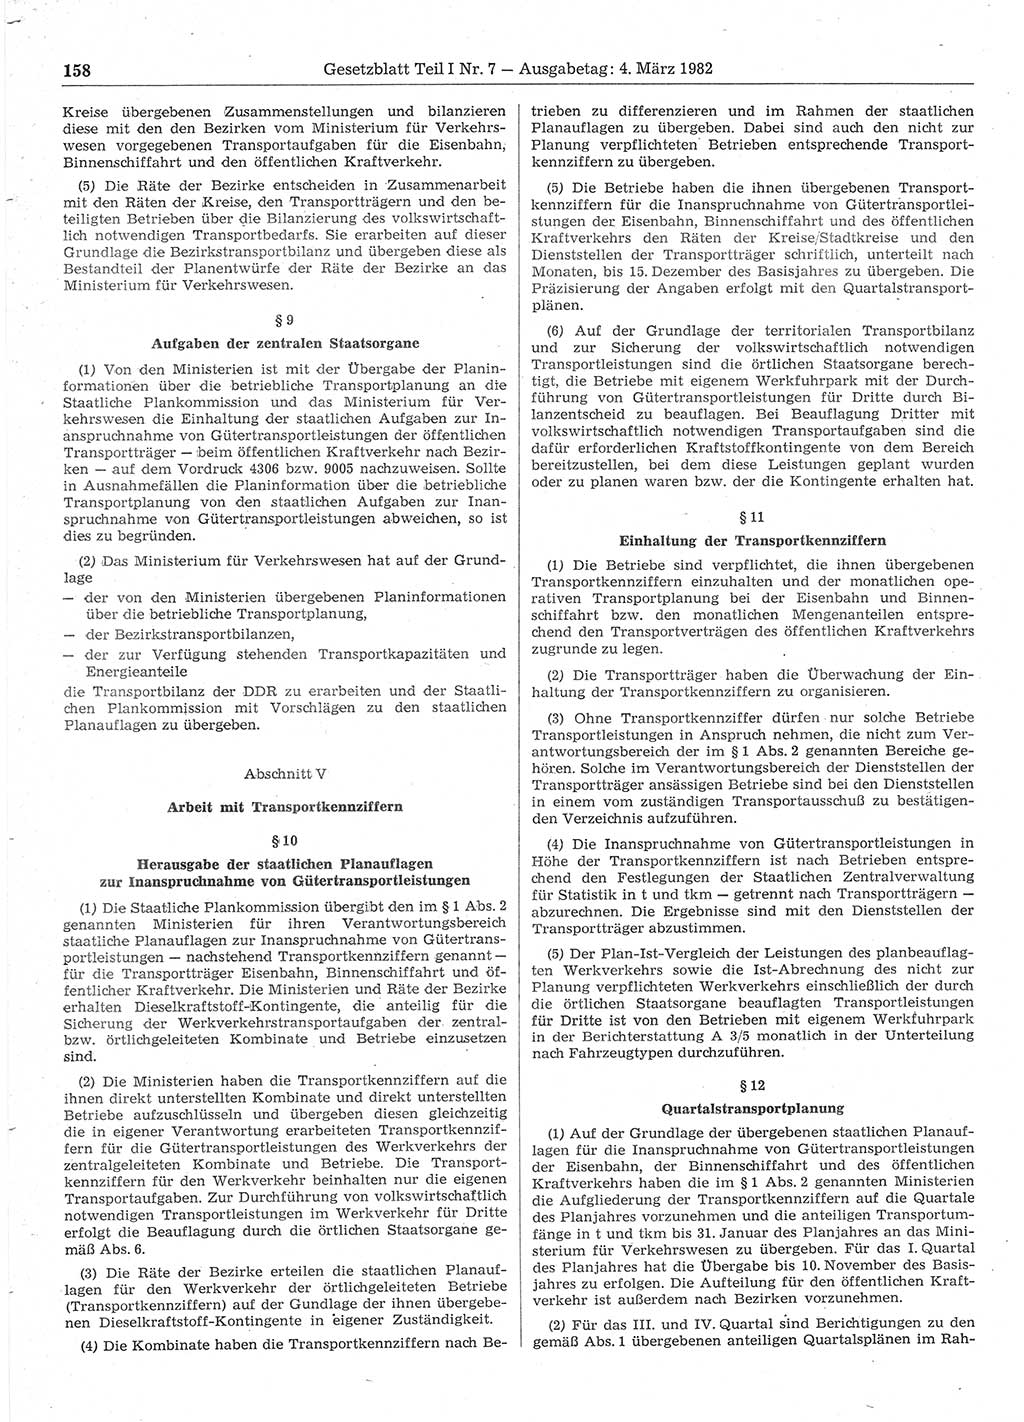 Gesetzblatt (GBl.) der Deutschen Demokratischen Republik (DDR) Teil Ⅰ 1982, Seite 158 (GBl. DDR Ⅰ 1982, S. 158)